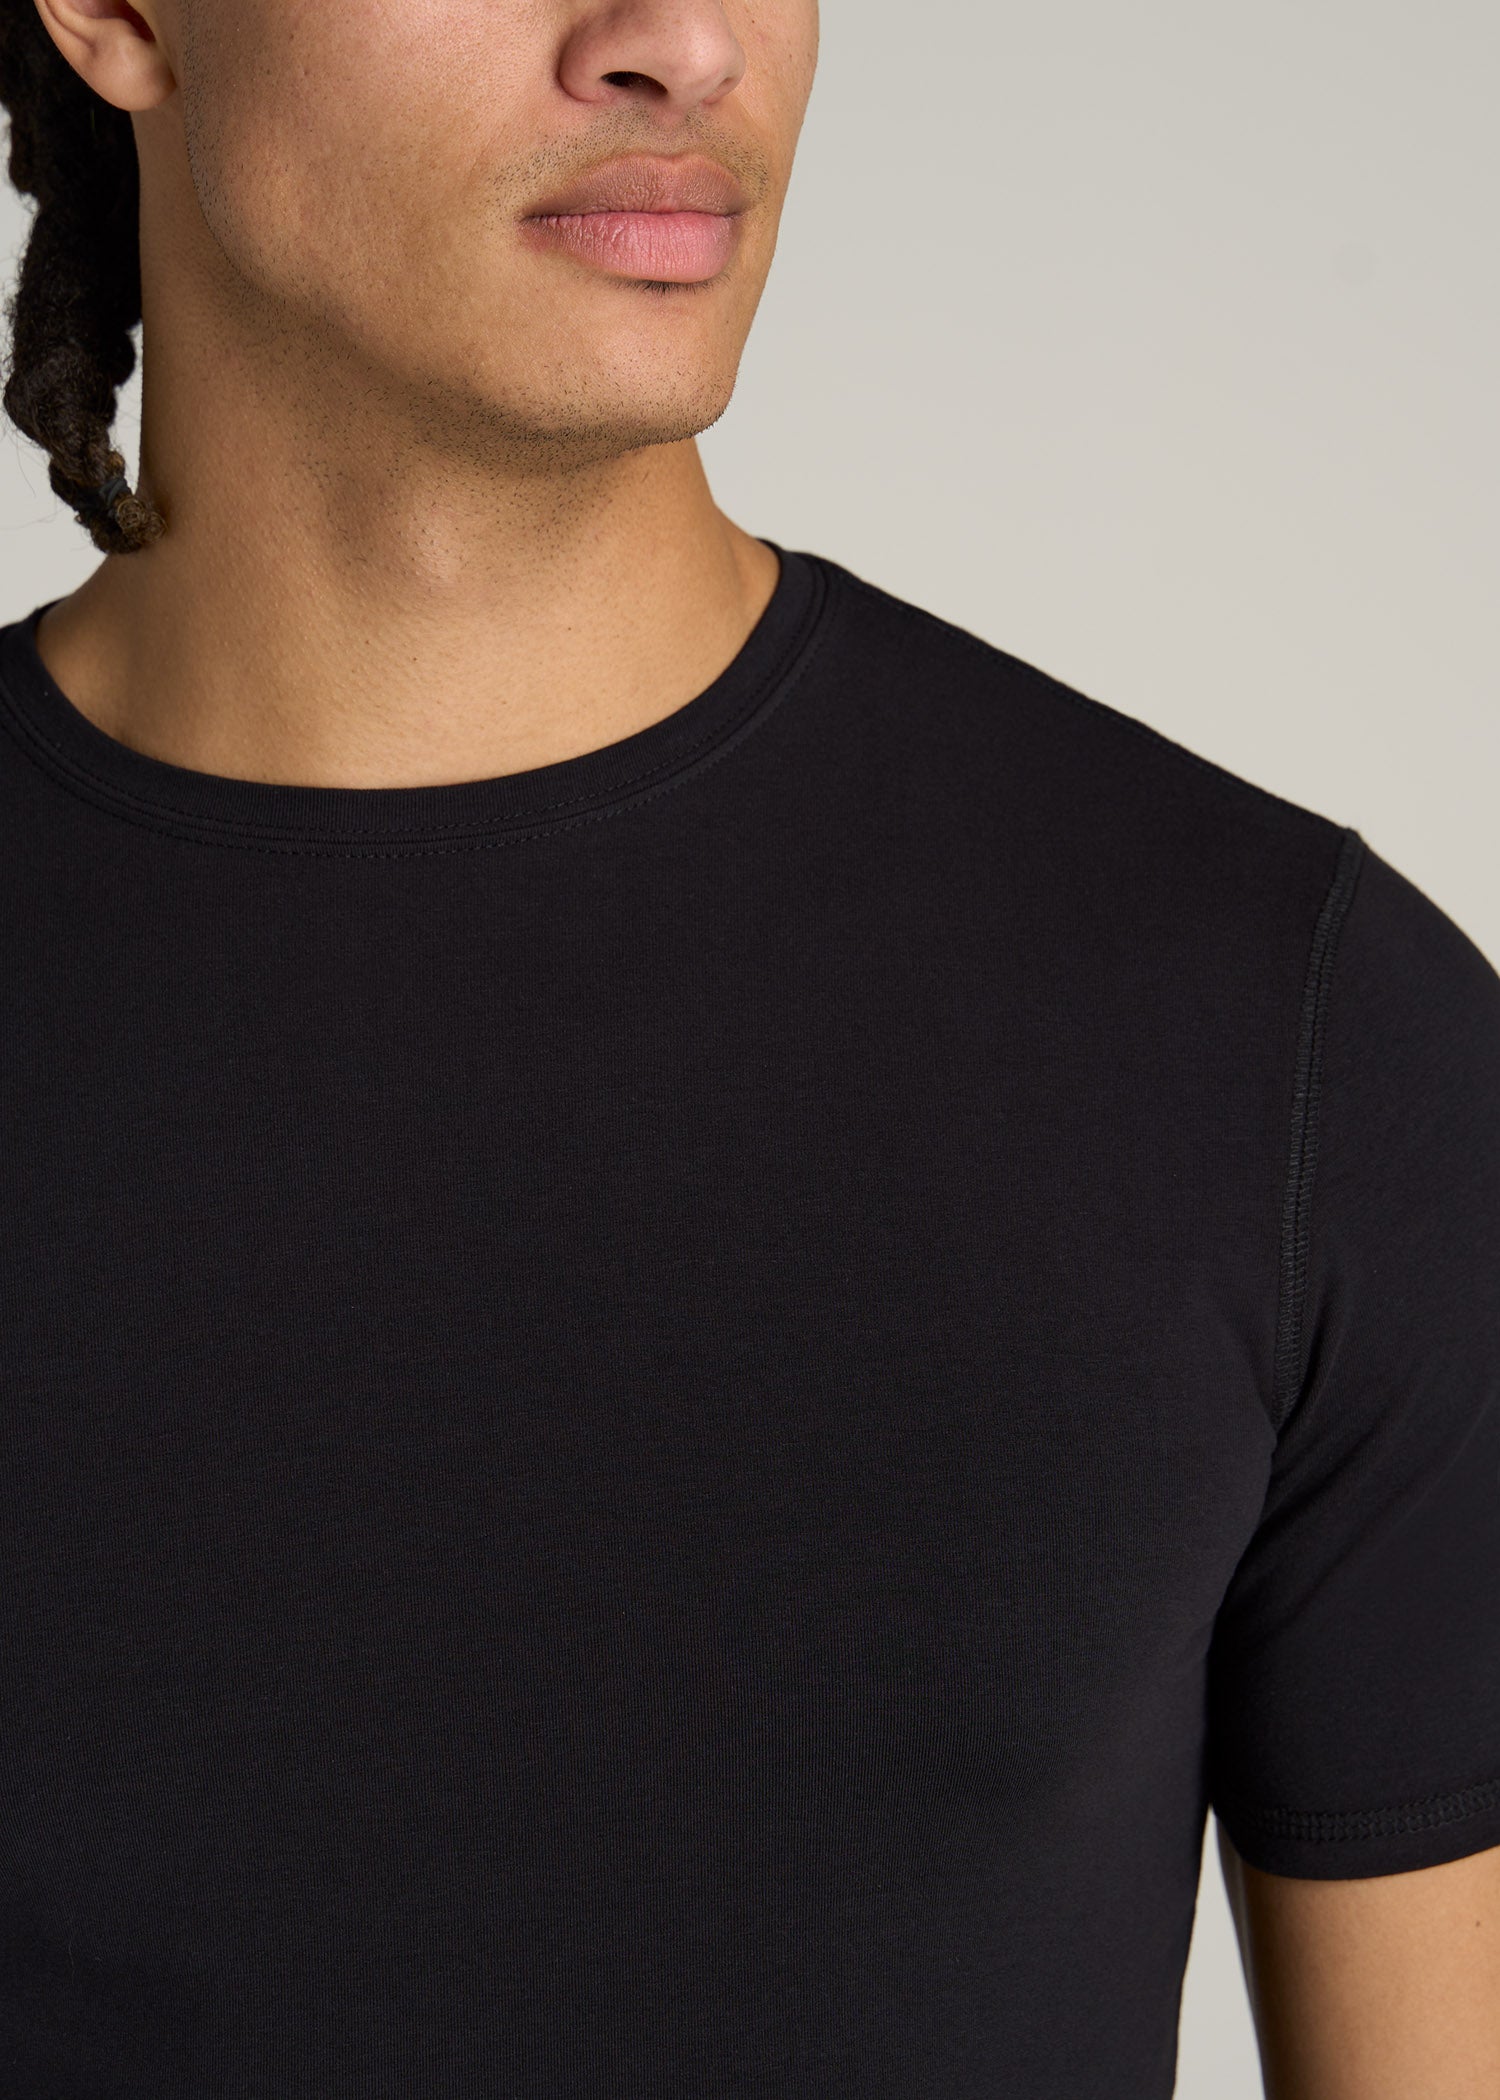 Slim Fit Black T-Shirt Tall Men's Essentials | Tall